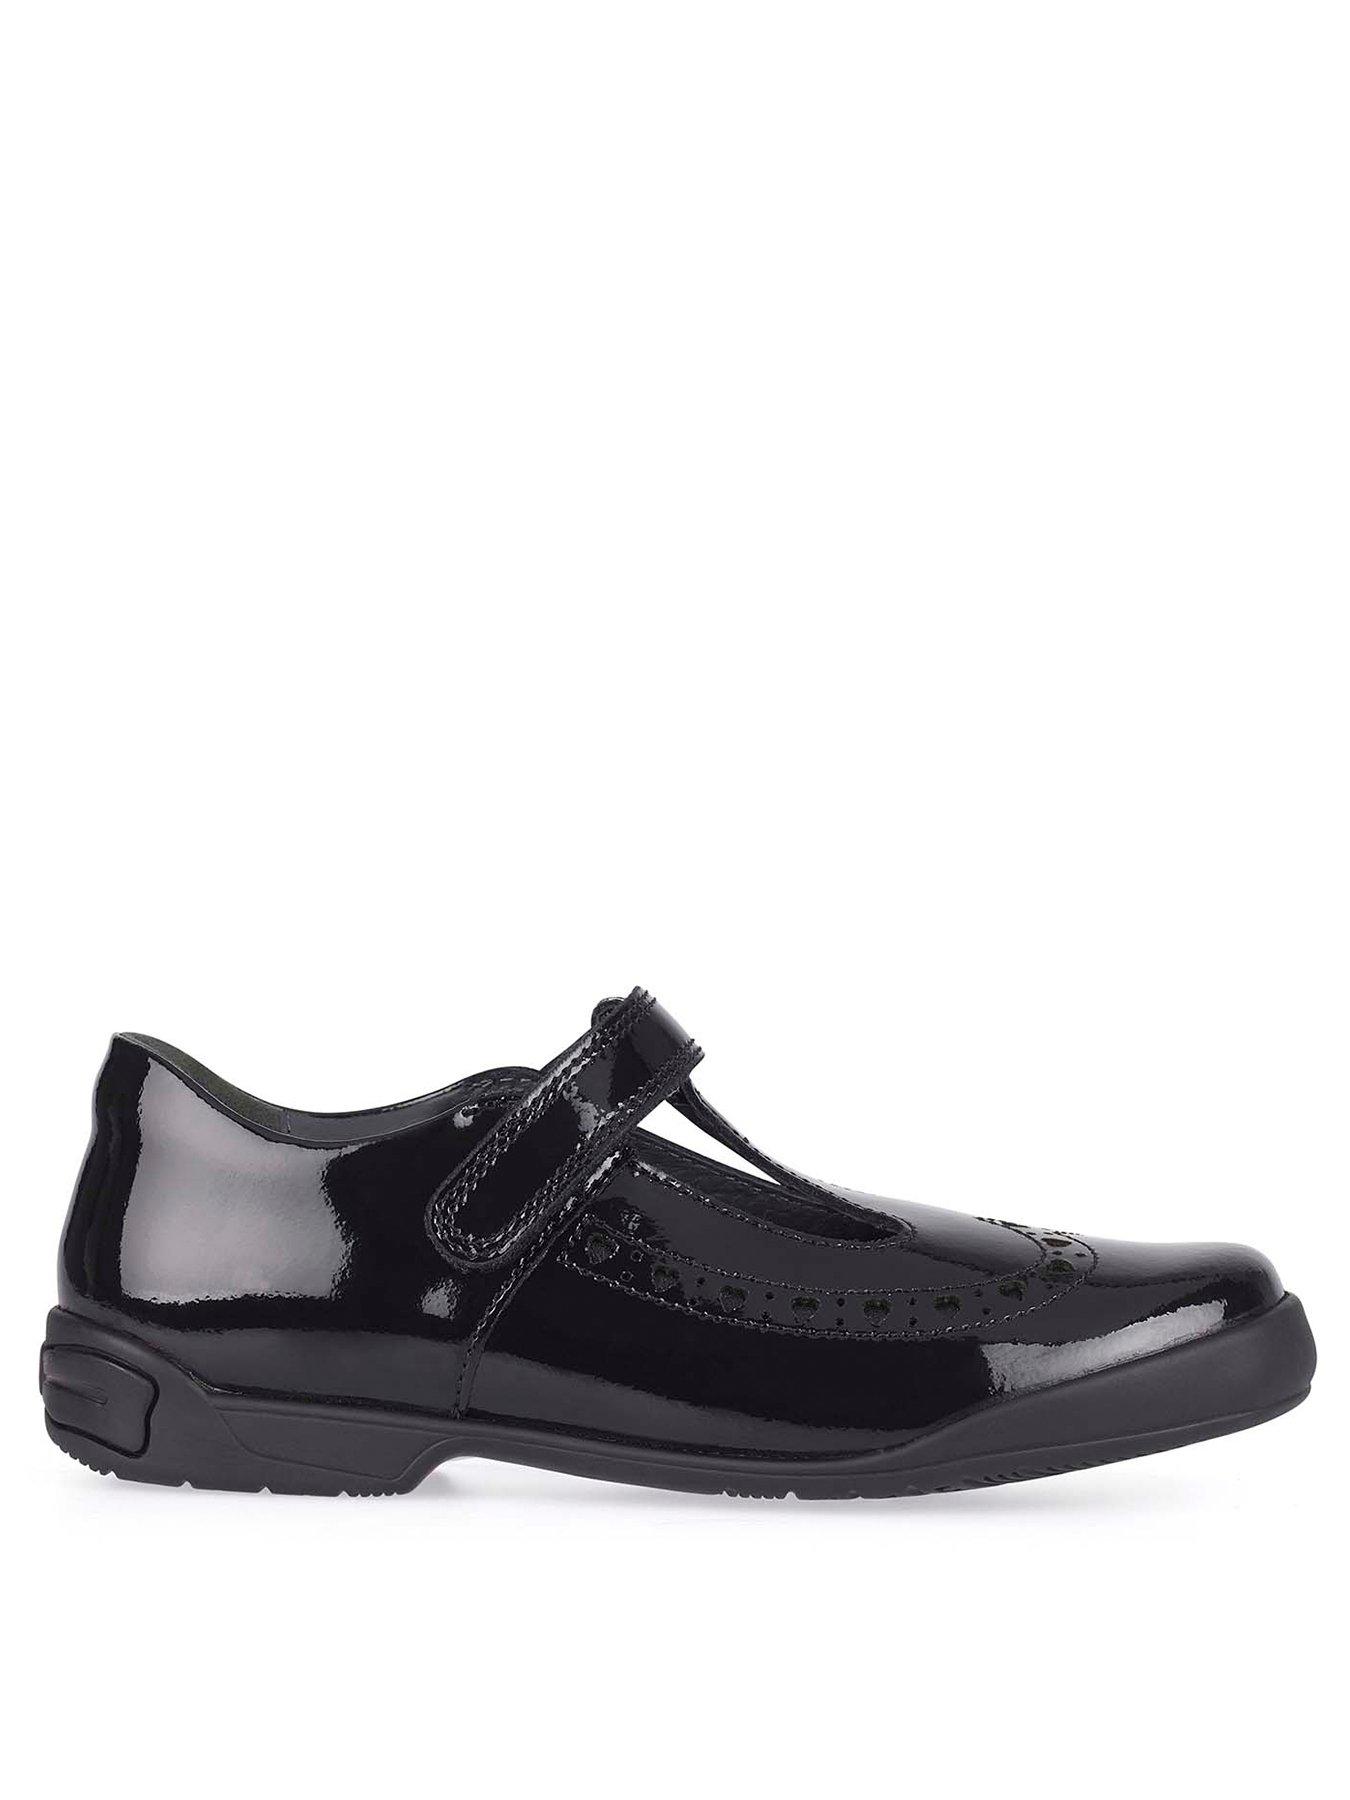  Girls Leapfrog T-Bar School Shoes - Black